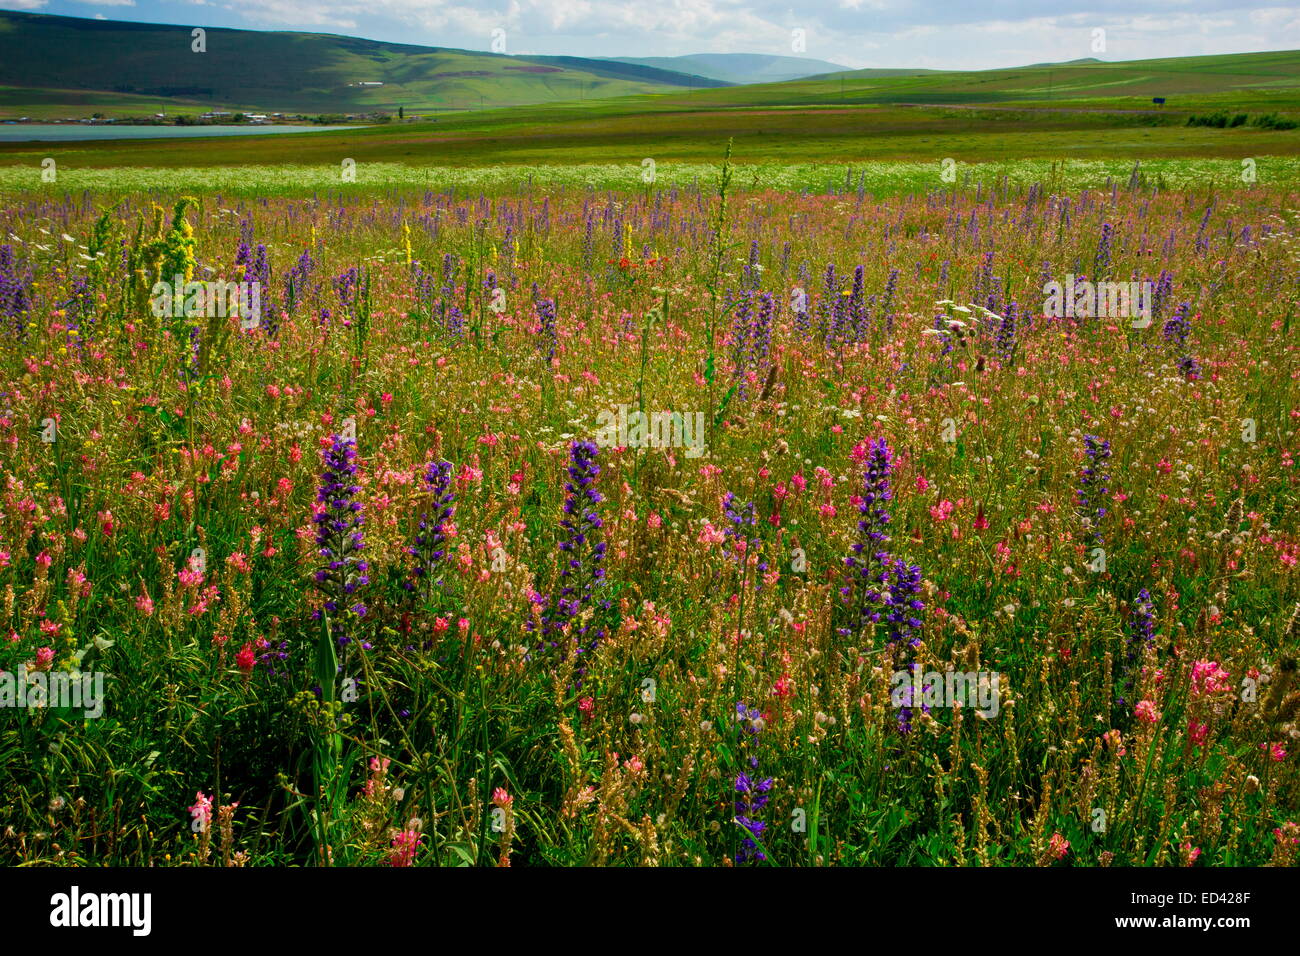 Les prairies fleuries intensément - avec la vipère, Vipérine commune Sainfoin etc - autour du lac d'Aktas Golu au loin au nord-est de la Turquie. Banque D'Images